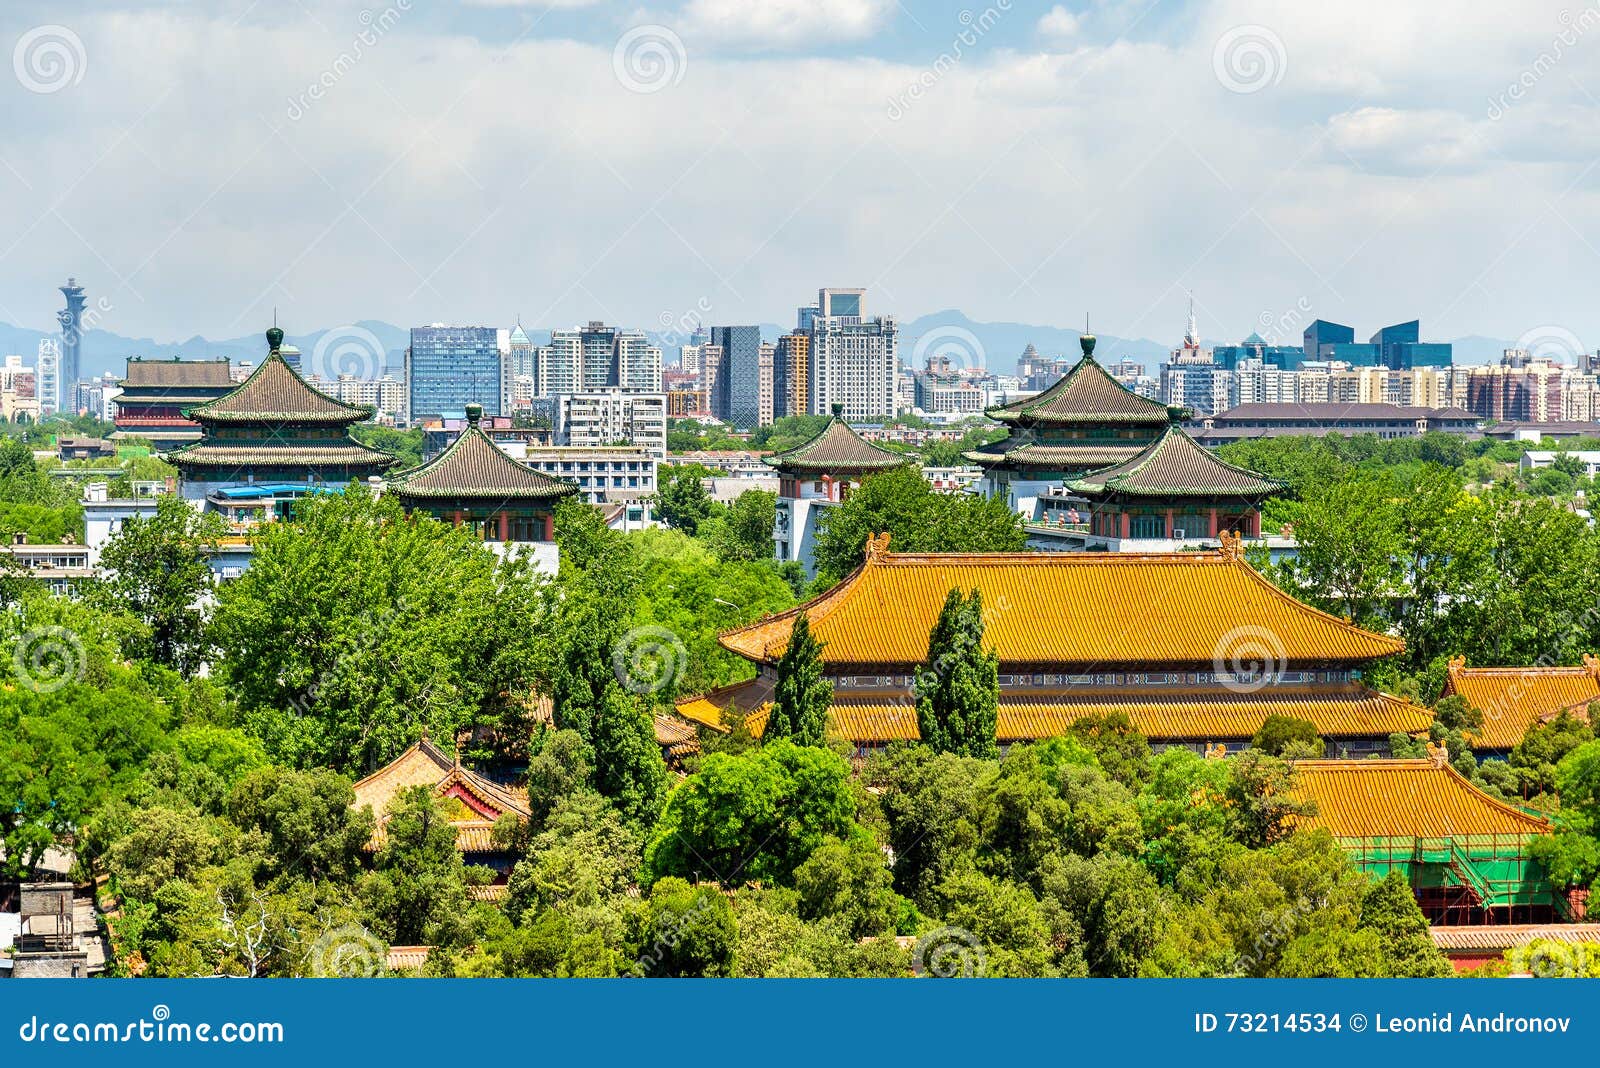 view of shouhuang palace in jingshan park - beijing